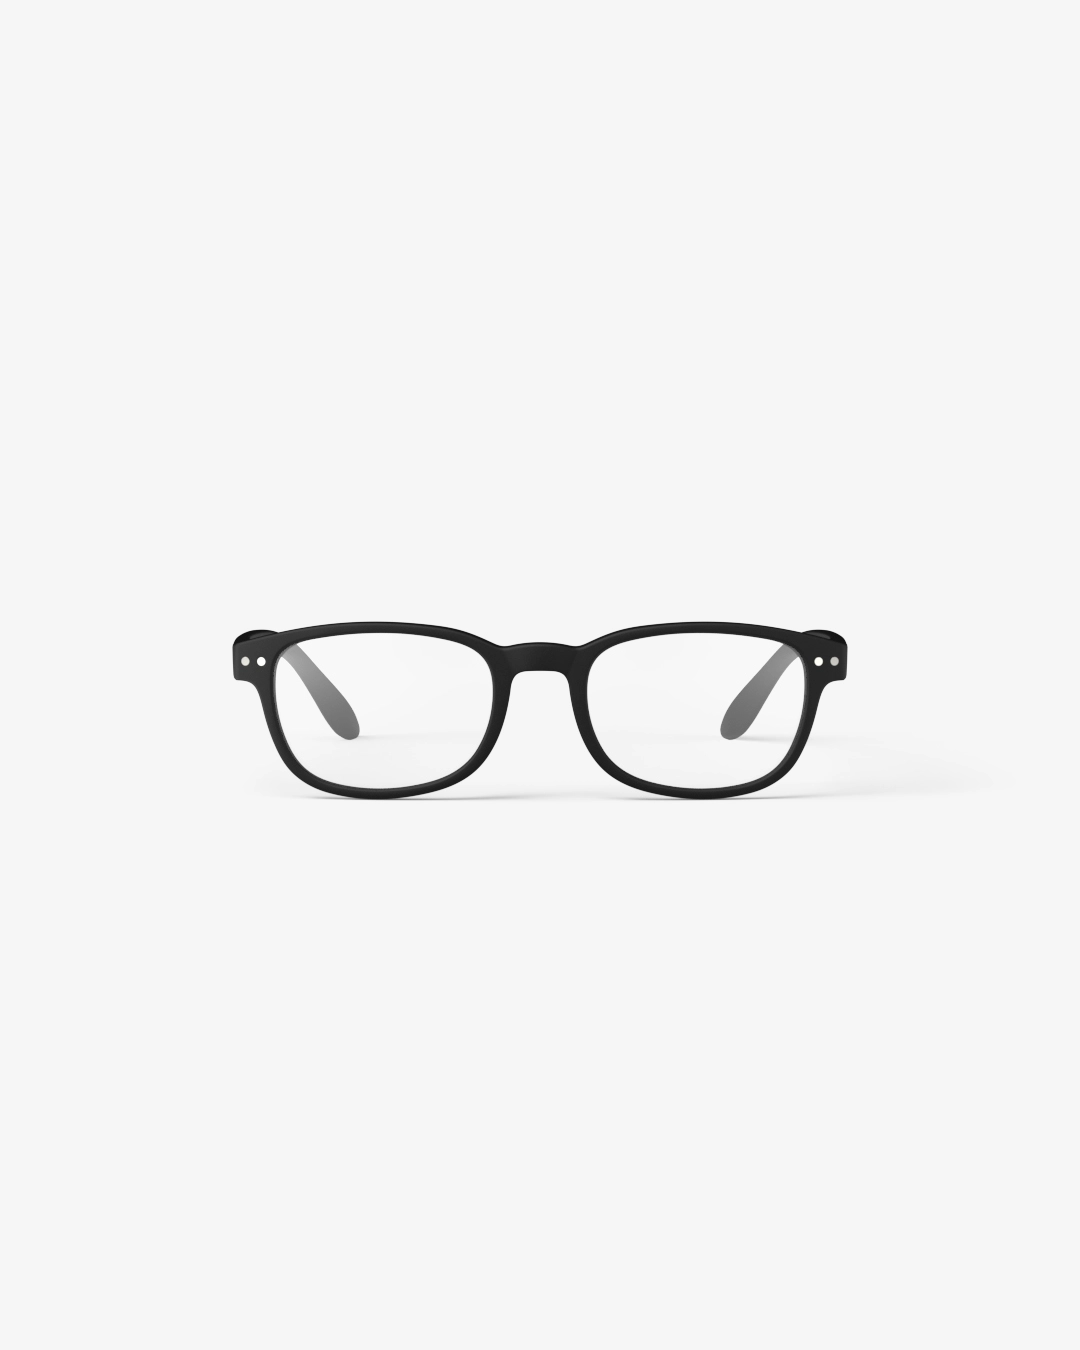 IZIPIZI #B Black Reading Glasses +1.0